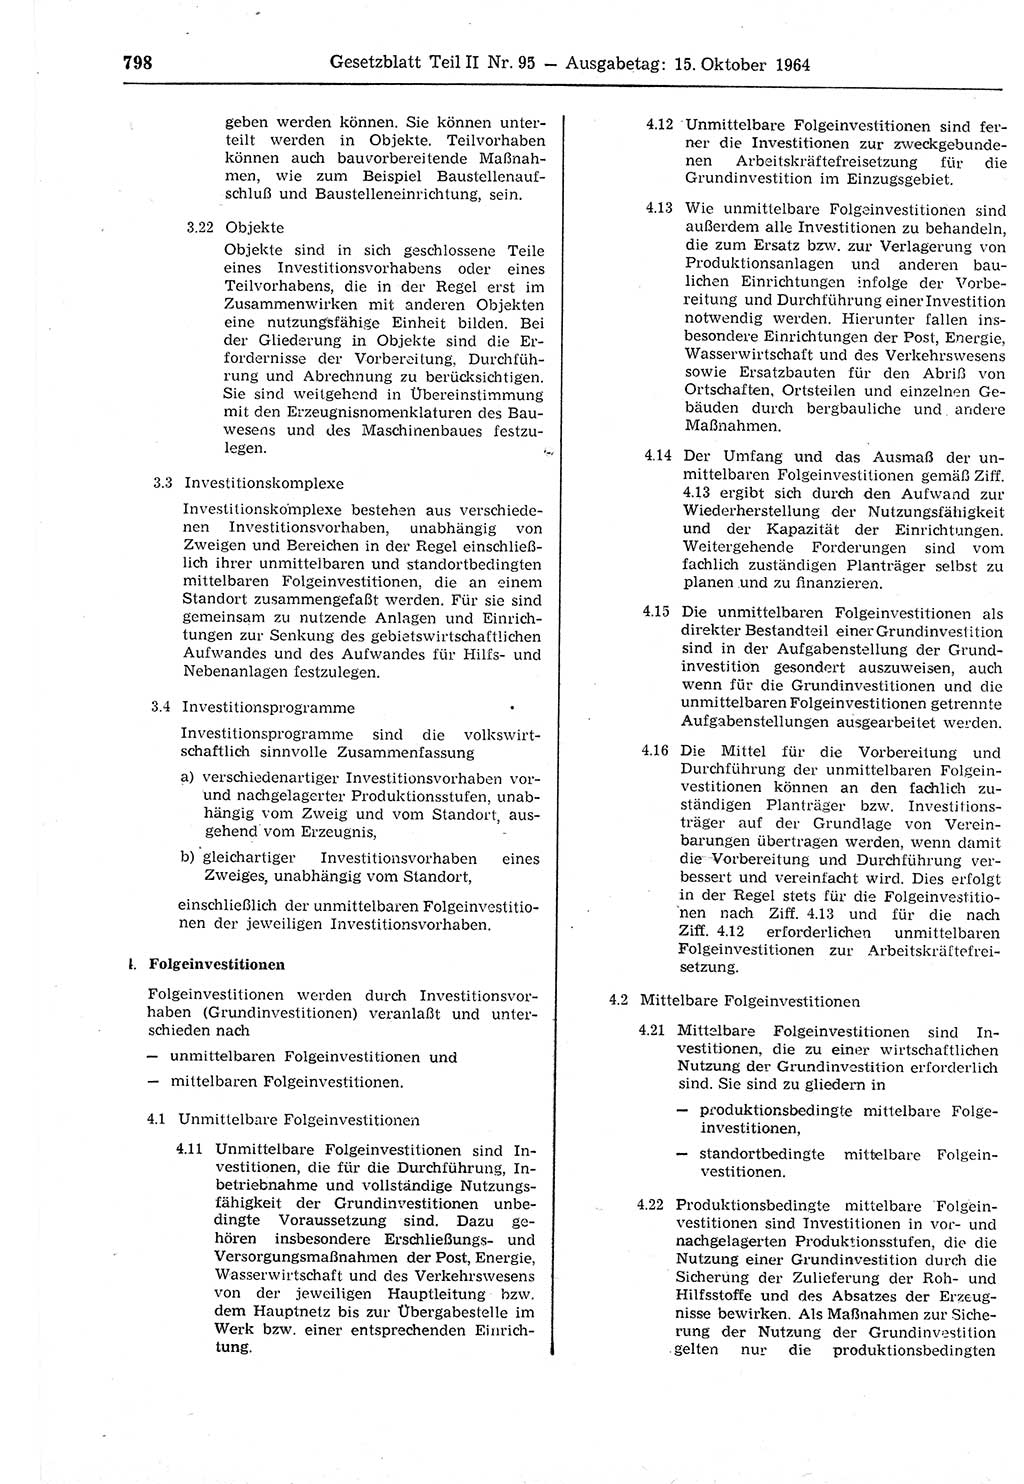 Gesetzblatt (GBl.) der Deutschen Demokratischen Republik (DDR) Teil ⅠⅠ 1964, Seite 798 (GBl. DDR ⅠⅠ 1964, S. 798)